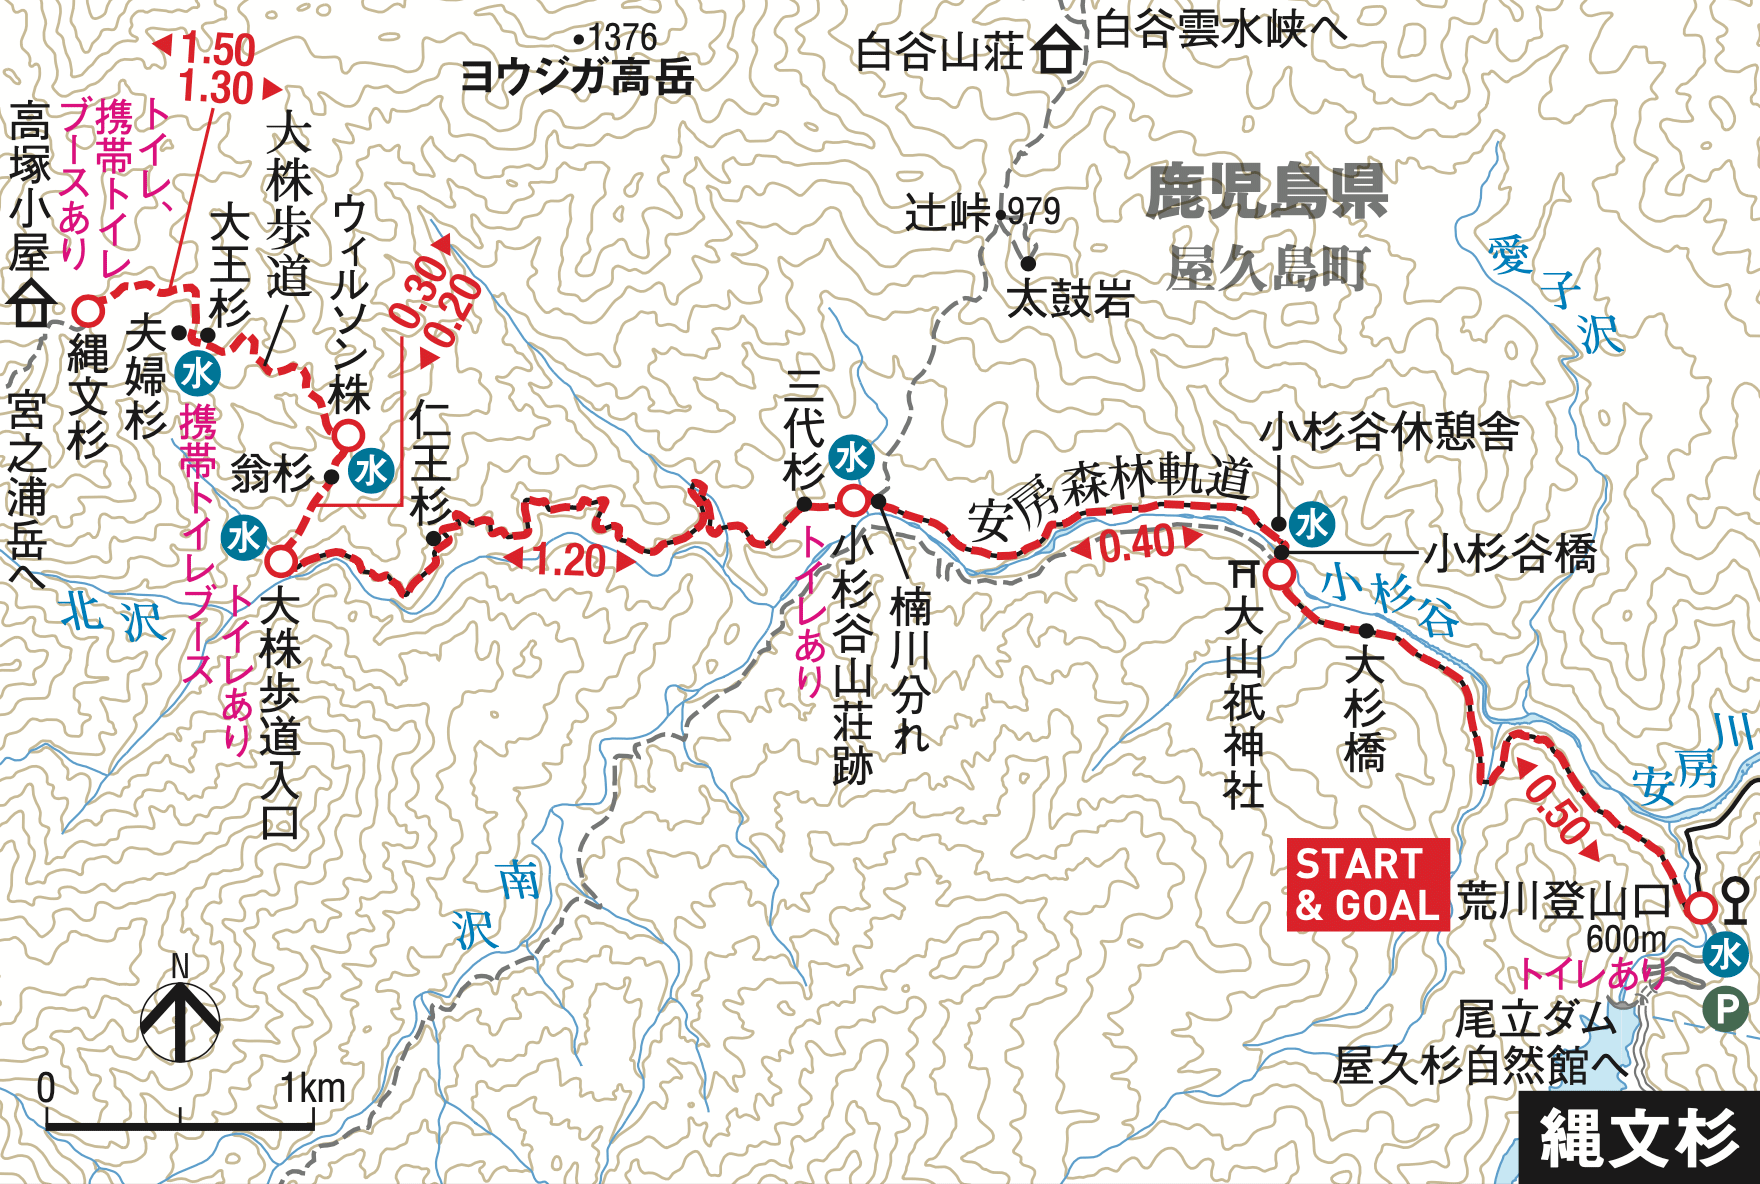 縄文杉 トレッキングコース MAP